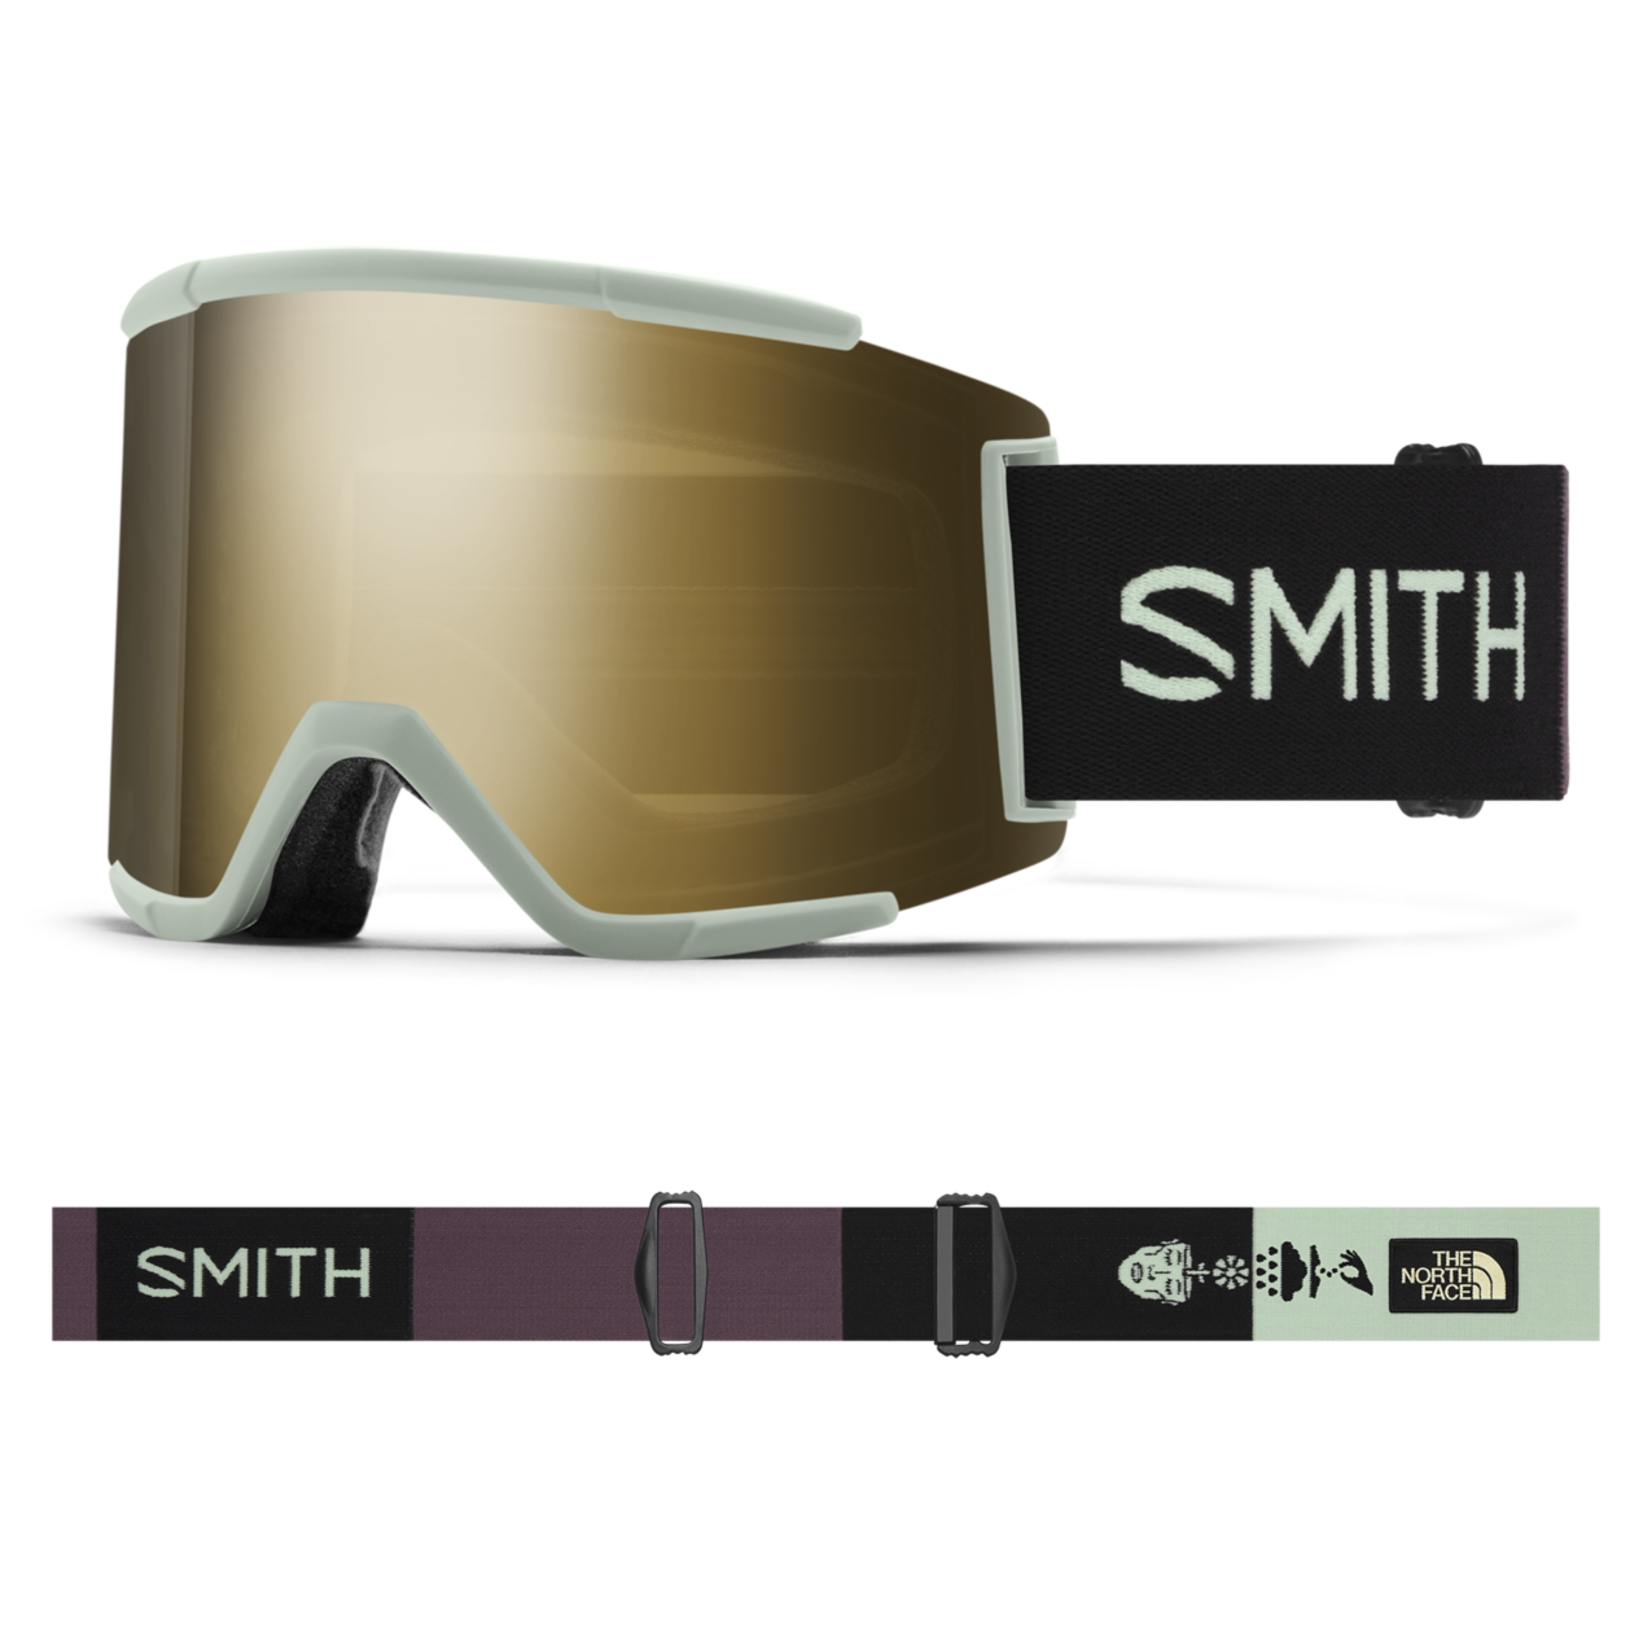 SMITH SMITH SQUAD XL